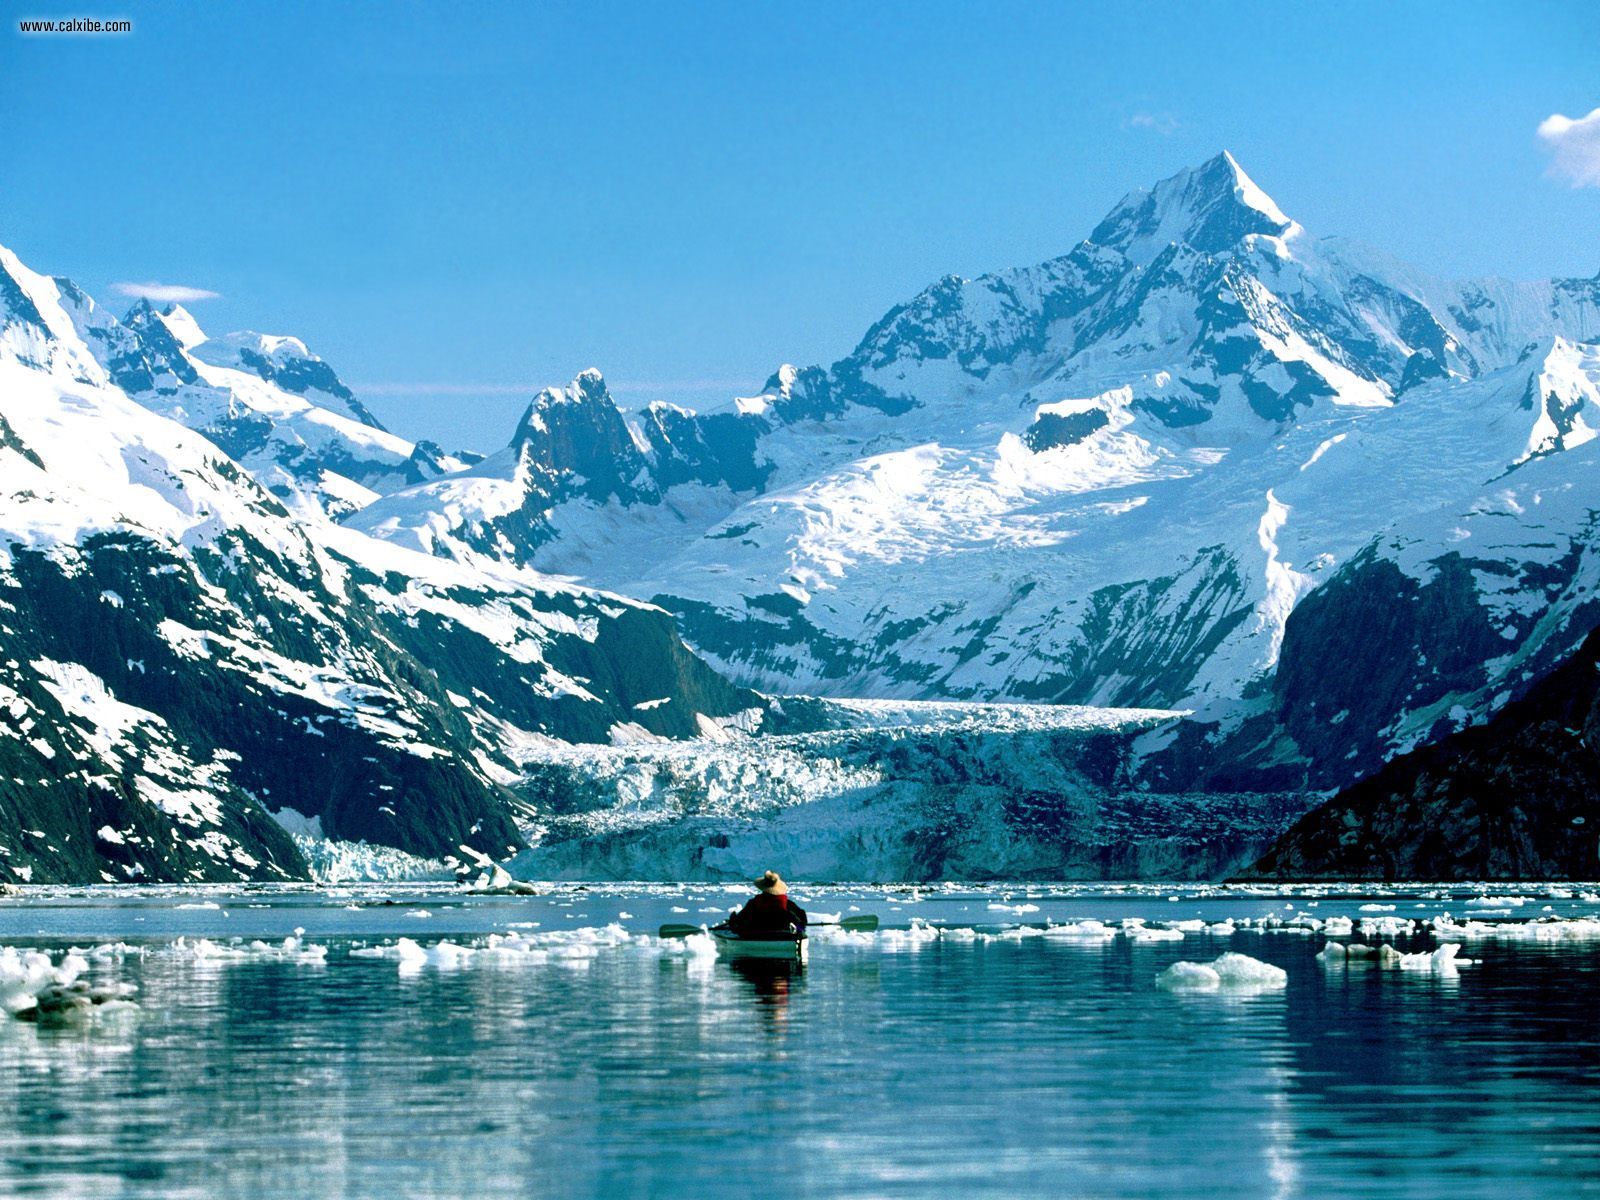 Glacier Bay Sea Kayaks is the concession in Glacier Bay National Park